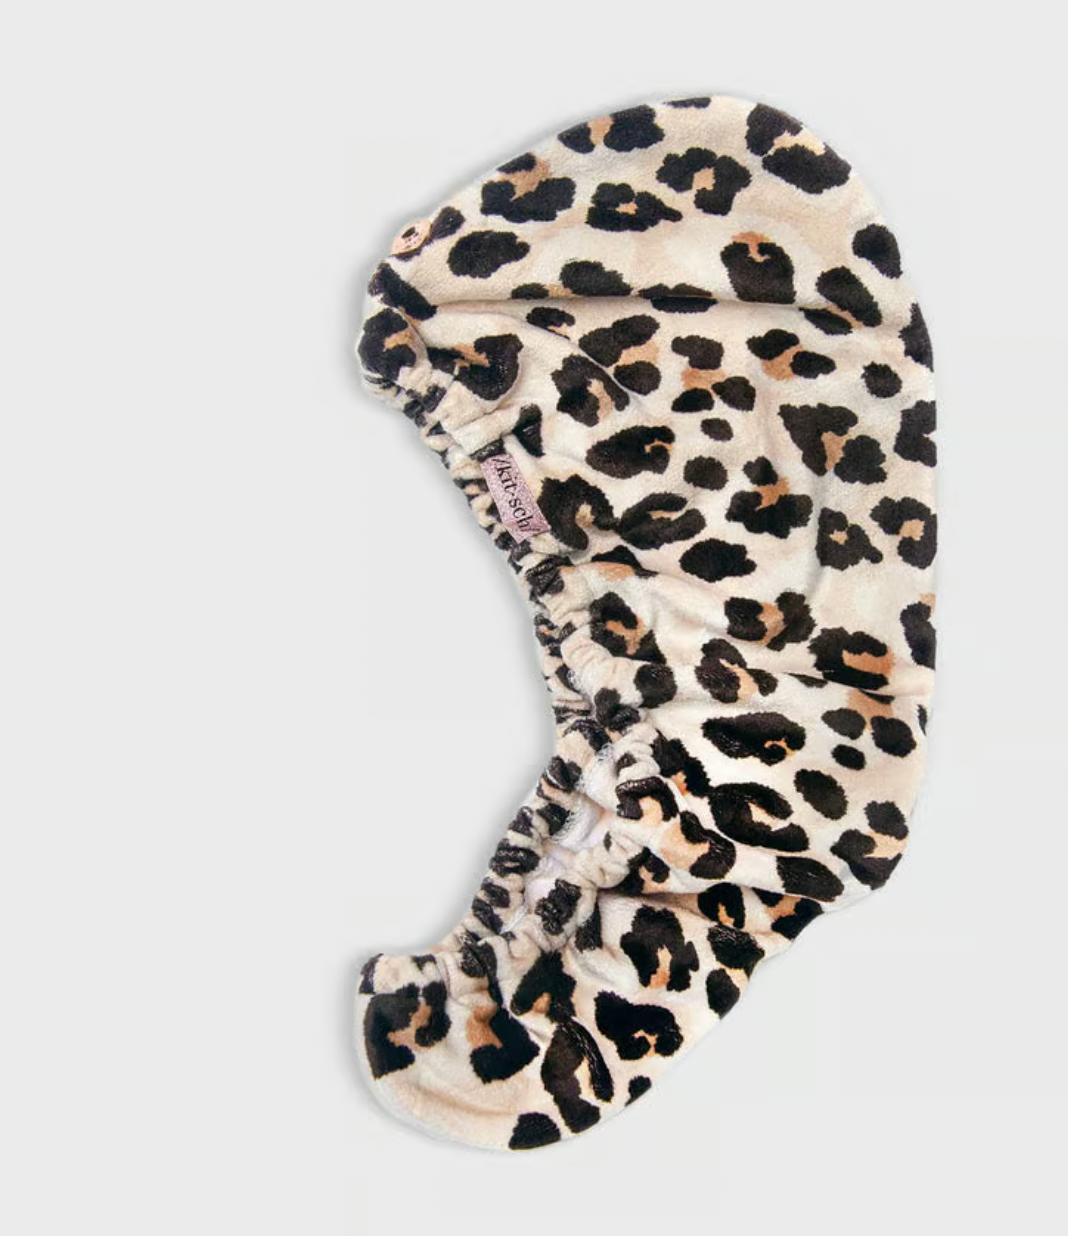 Microfiber Hair Towel in Leopard